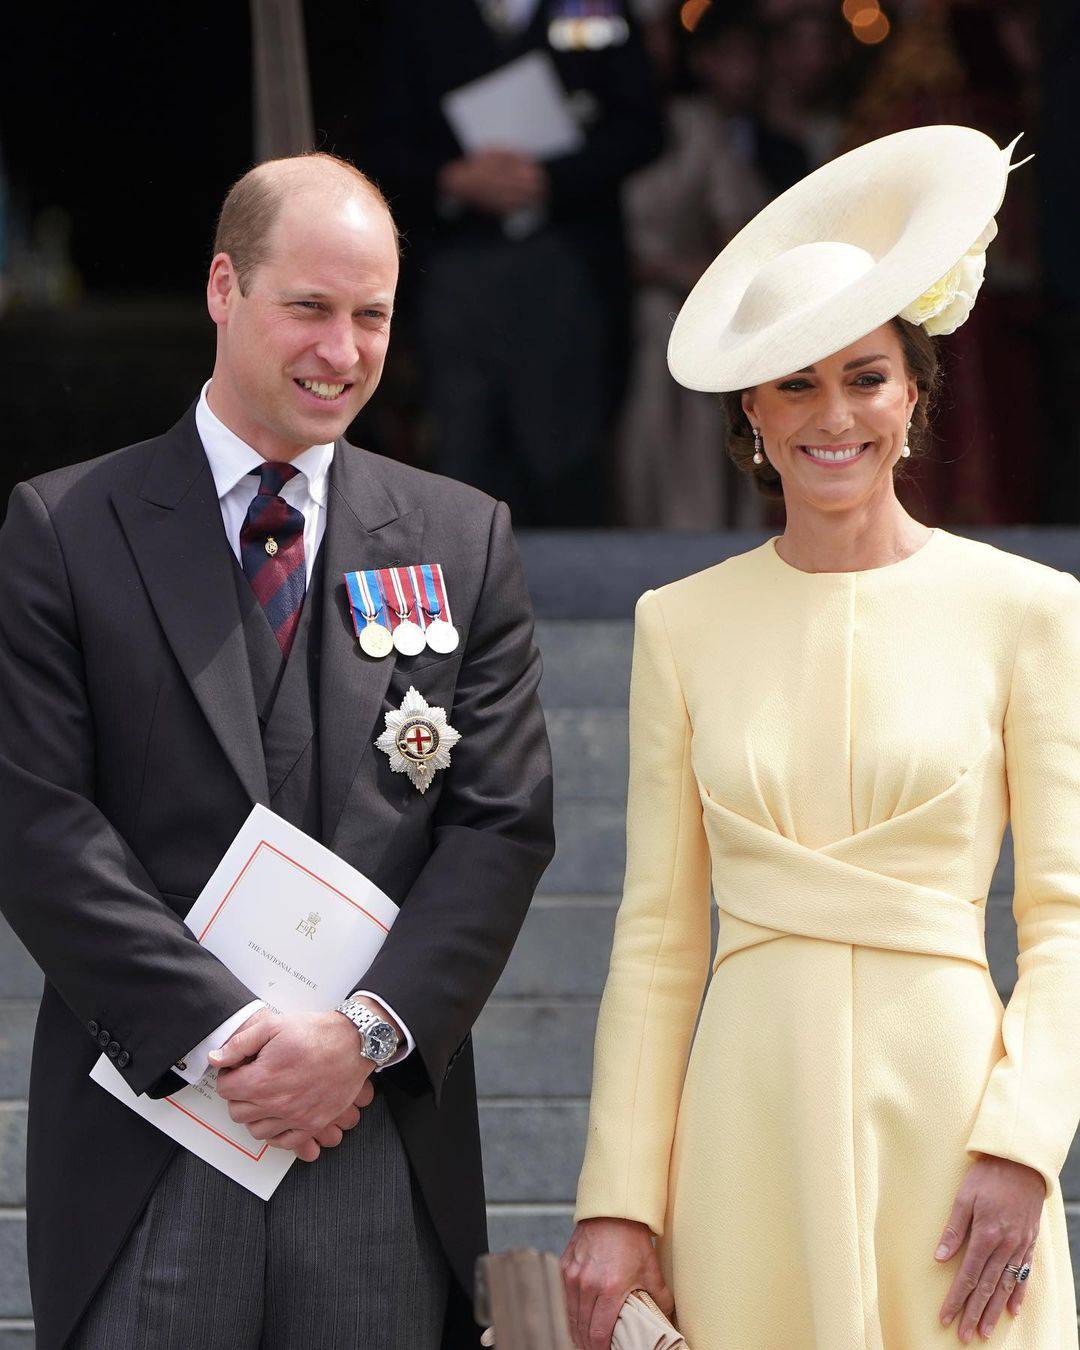 Kralj Charles III. zabranio je pripremu jela u kojem posebno uživa princeza Kate Middleton